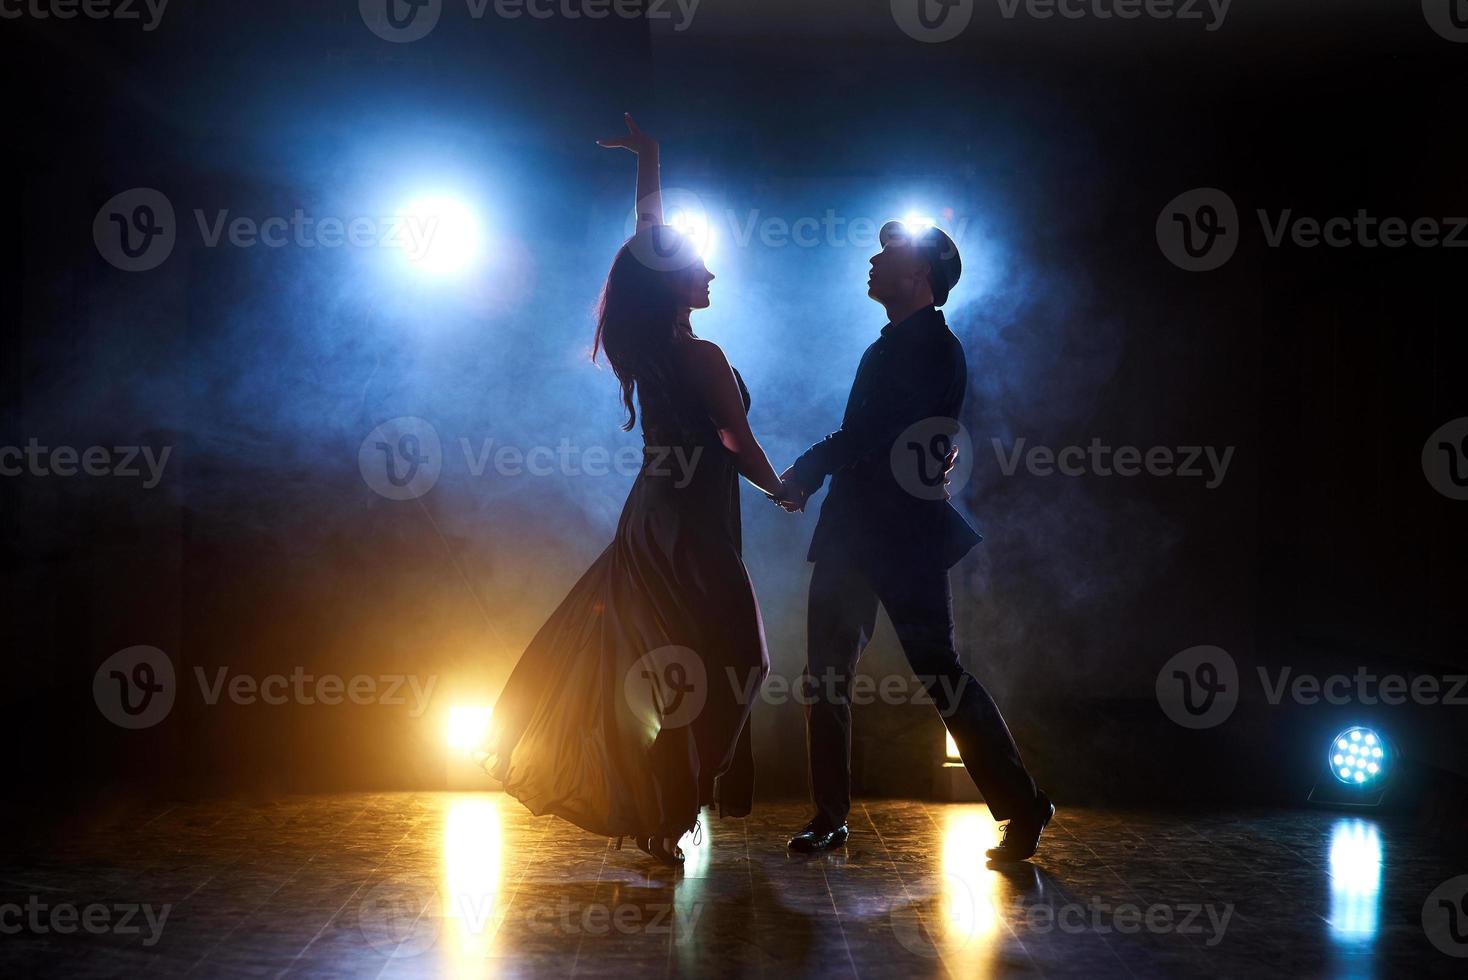 dançarinos habilidosos se apresentando no quarto escuro sob a luz e a fumaça do show. casal sensual realizando uma dança contemporânea artística e emocional foto